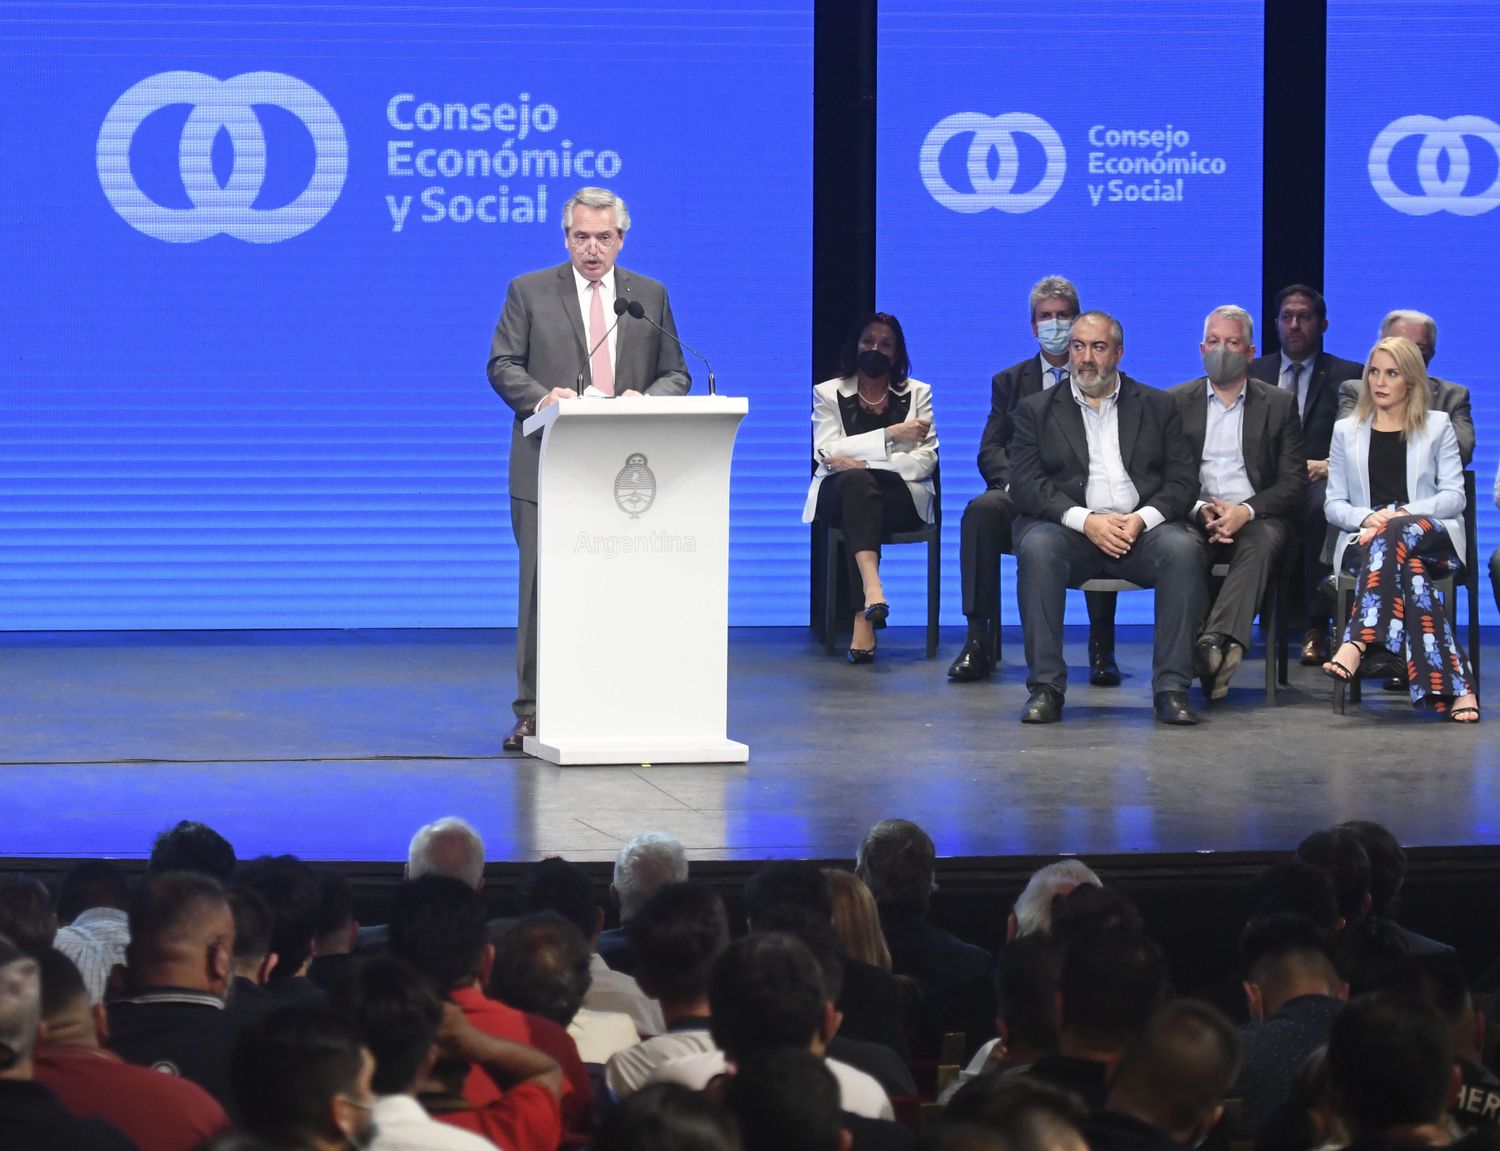 Inflación: Alberto Fernández reúne al Consejo Económico y Social para combatir a "los diablos que aumentan los precios"